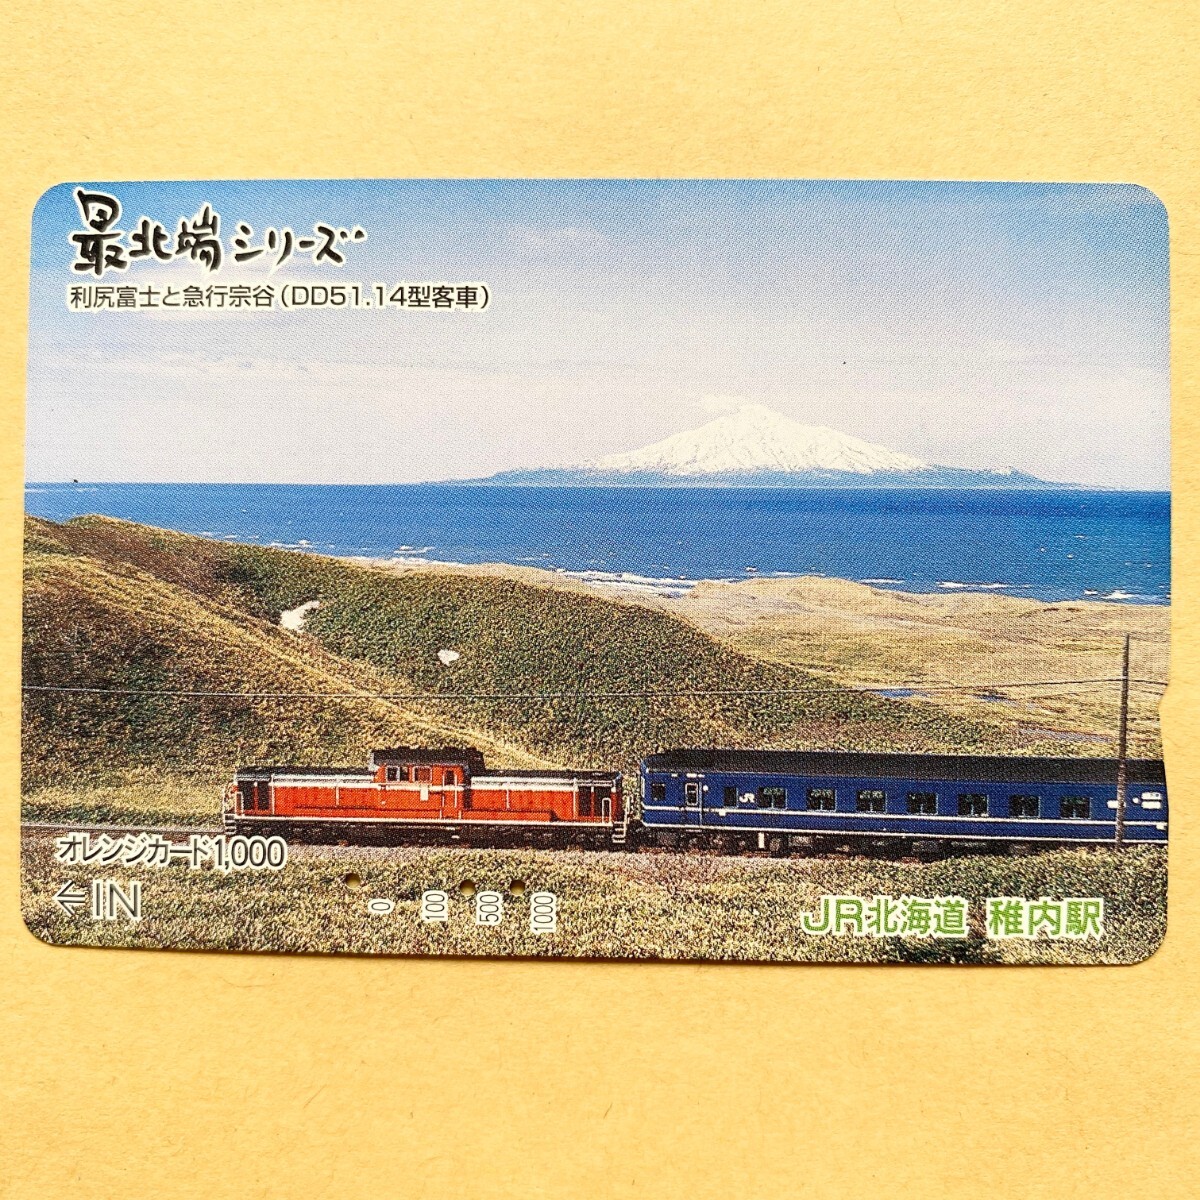 【使用済】 オレンジカード JR北海道 最北端シリーズ 利尻富士と急行宗谷(DD51.14型客車)の画像1